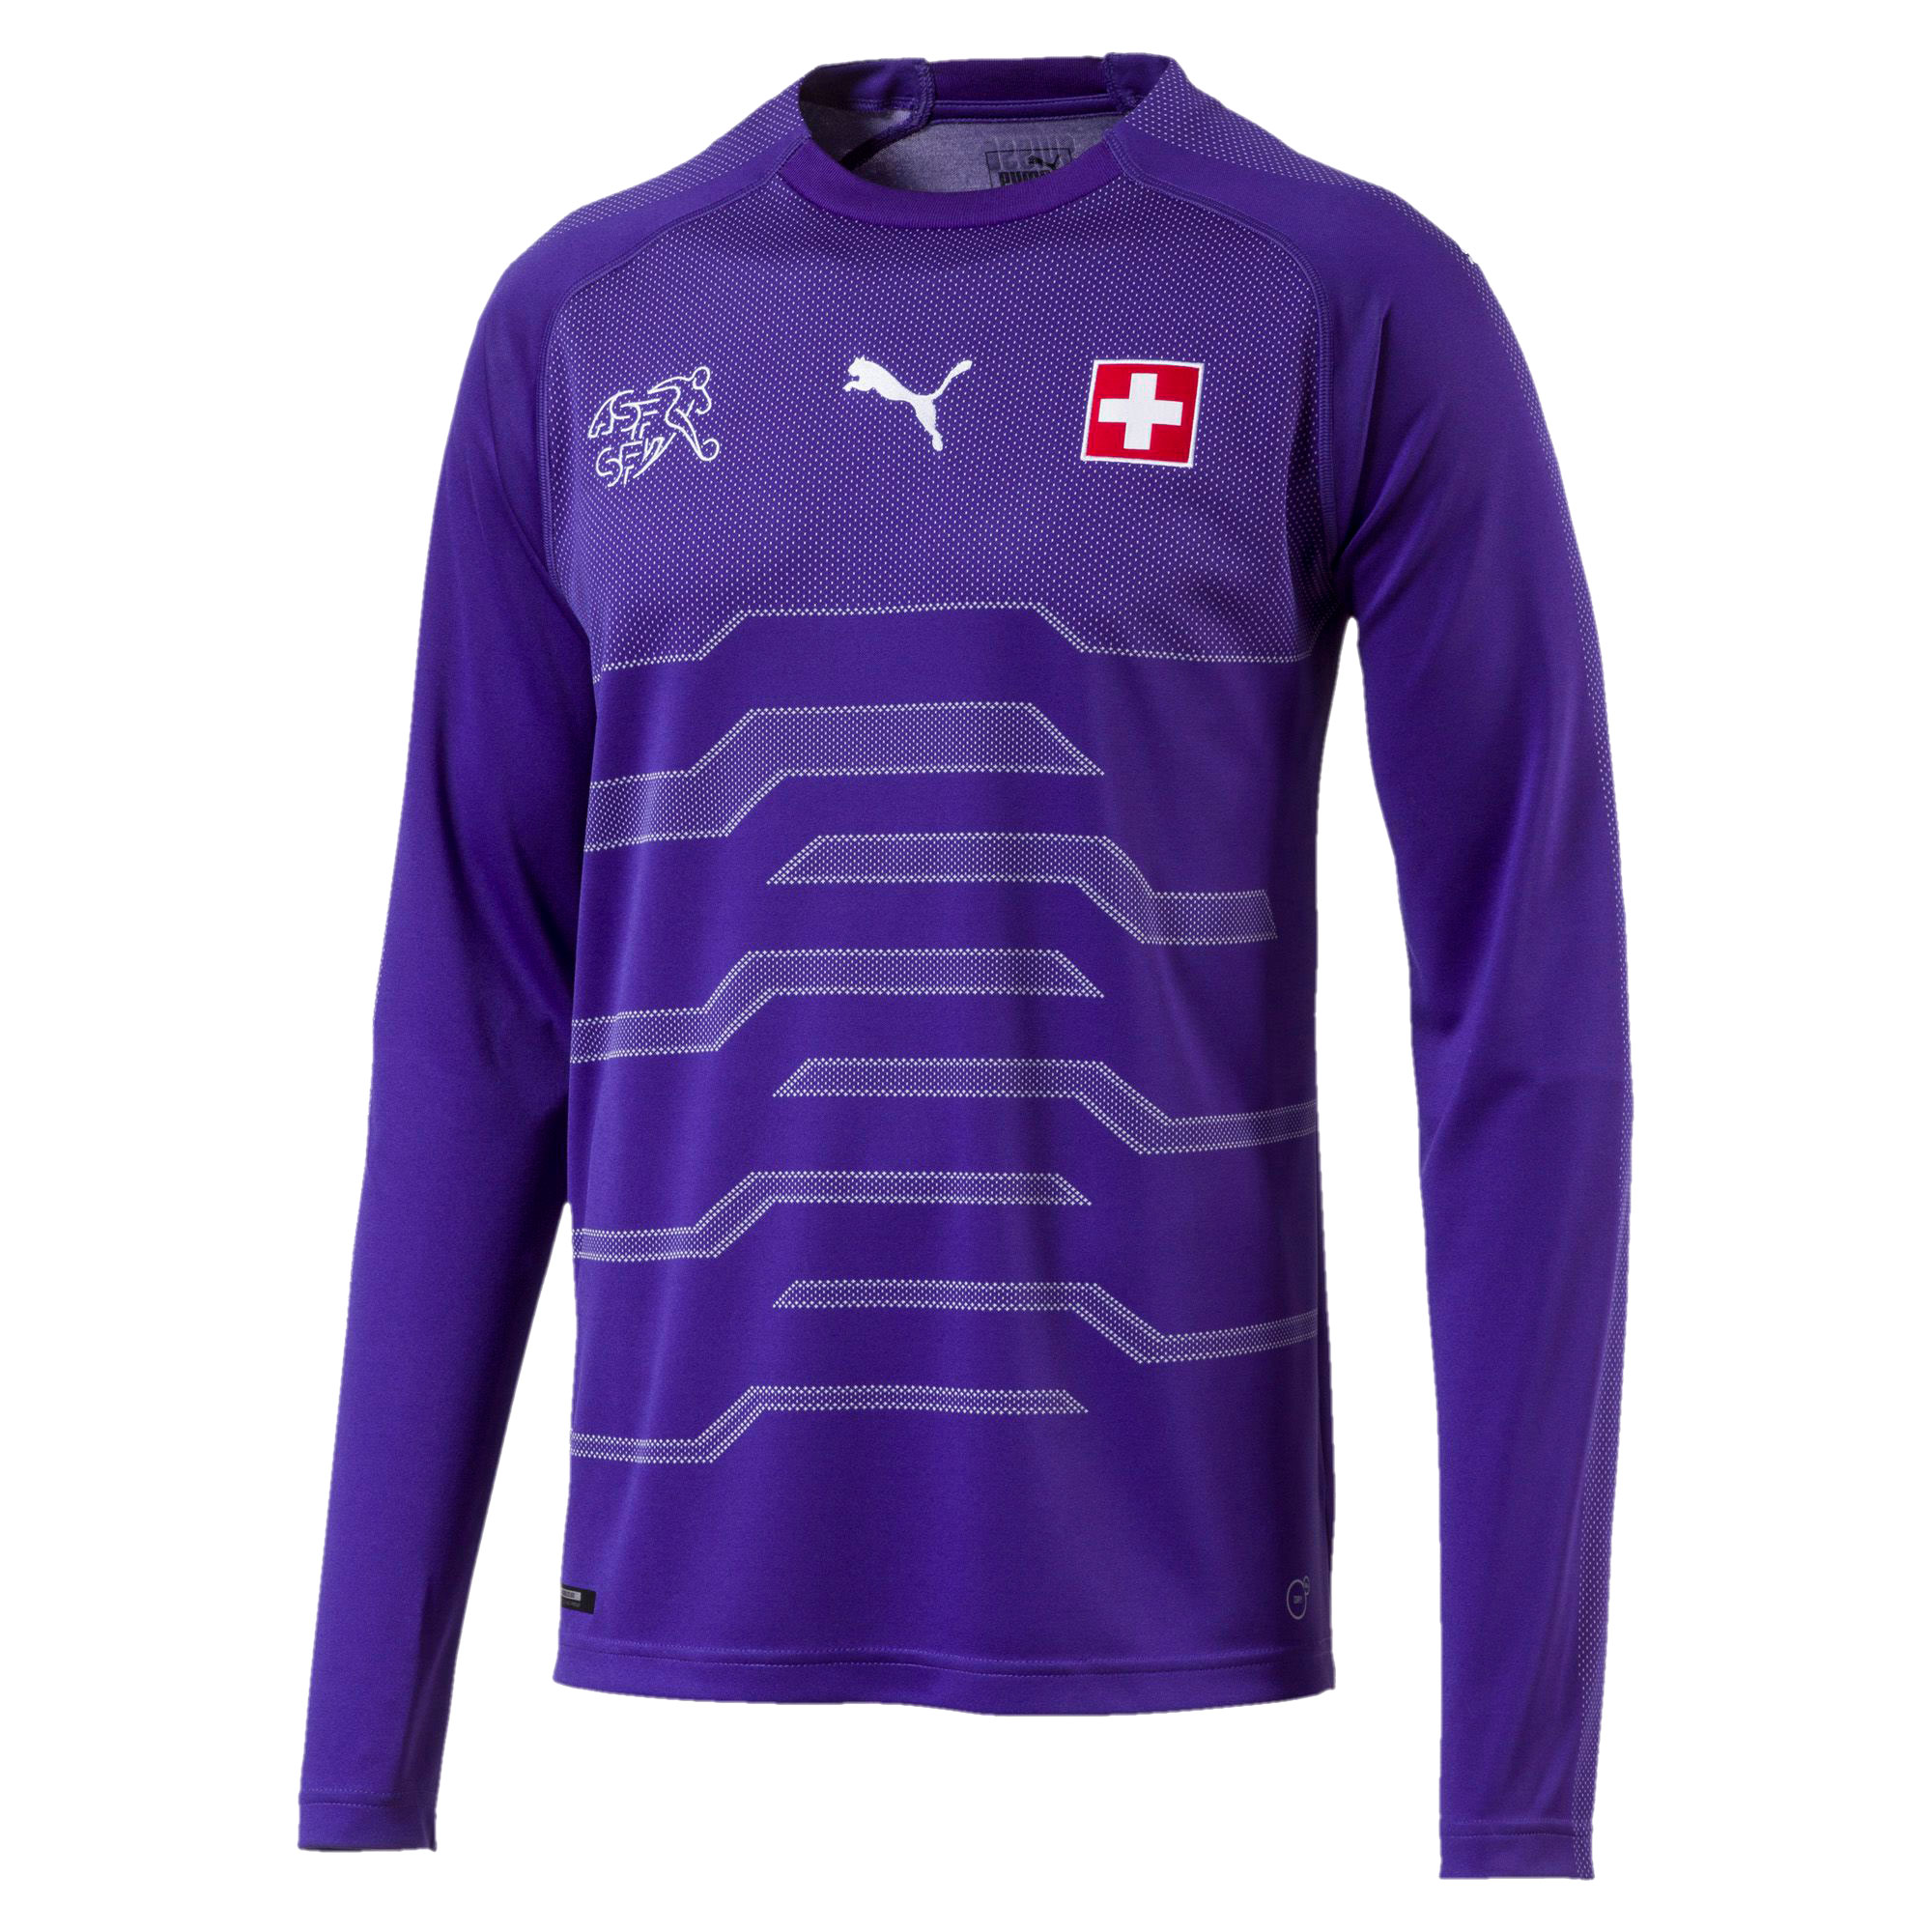 Zwitserland Keepersshirt 2018-2019